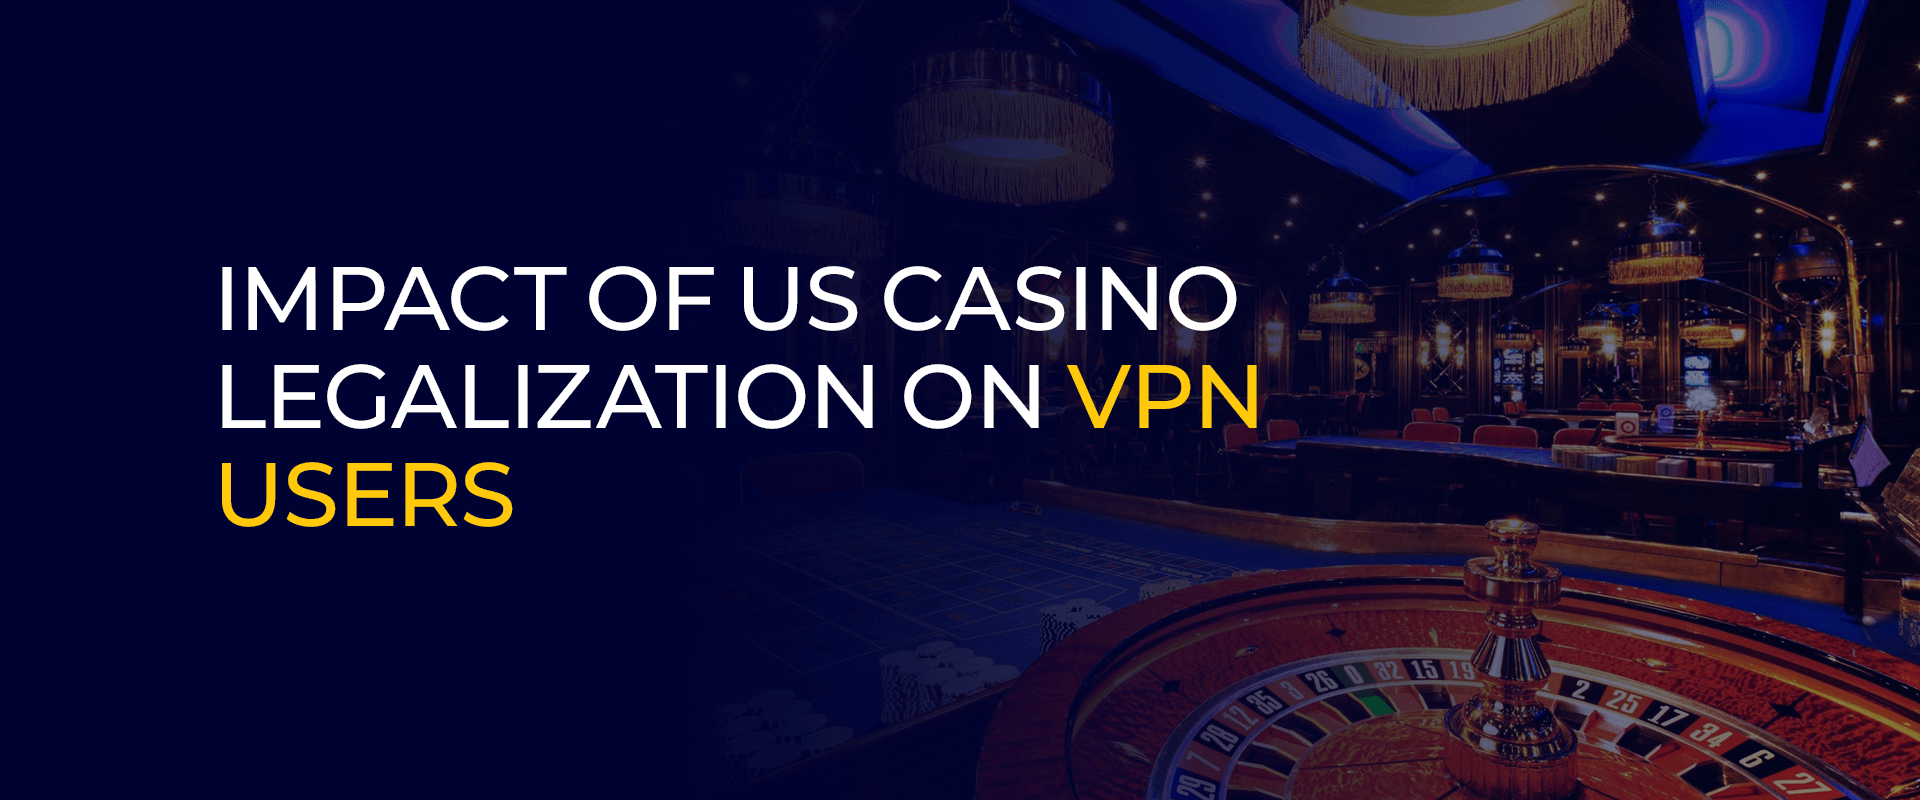 Dampak Legalisasi Kasino AS Pada Pengguna VPN